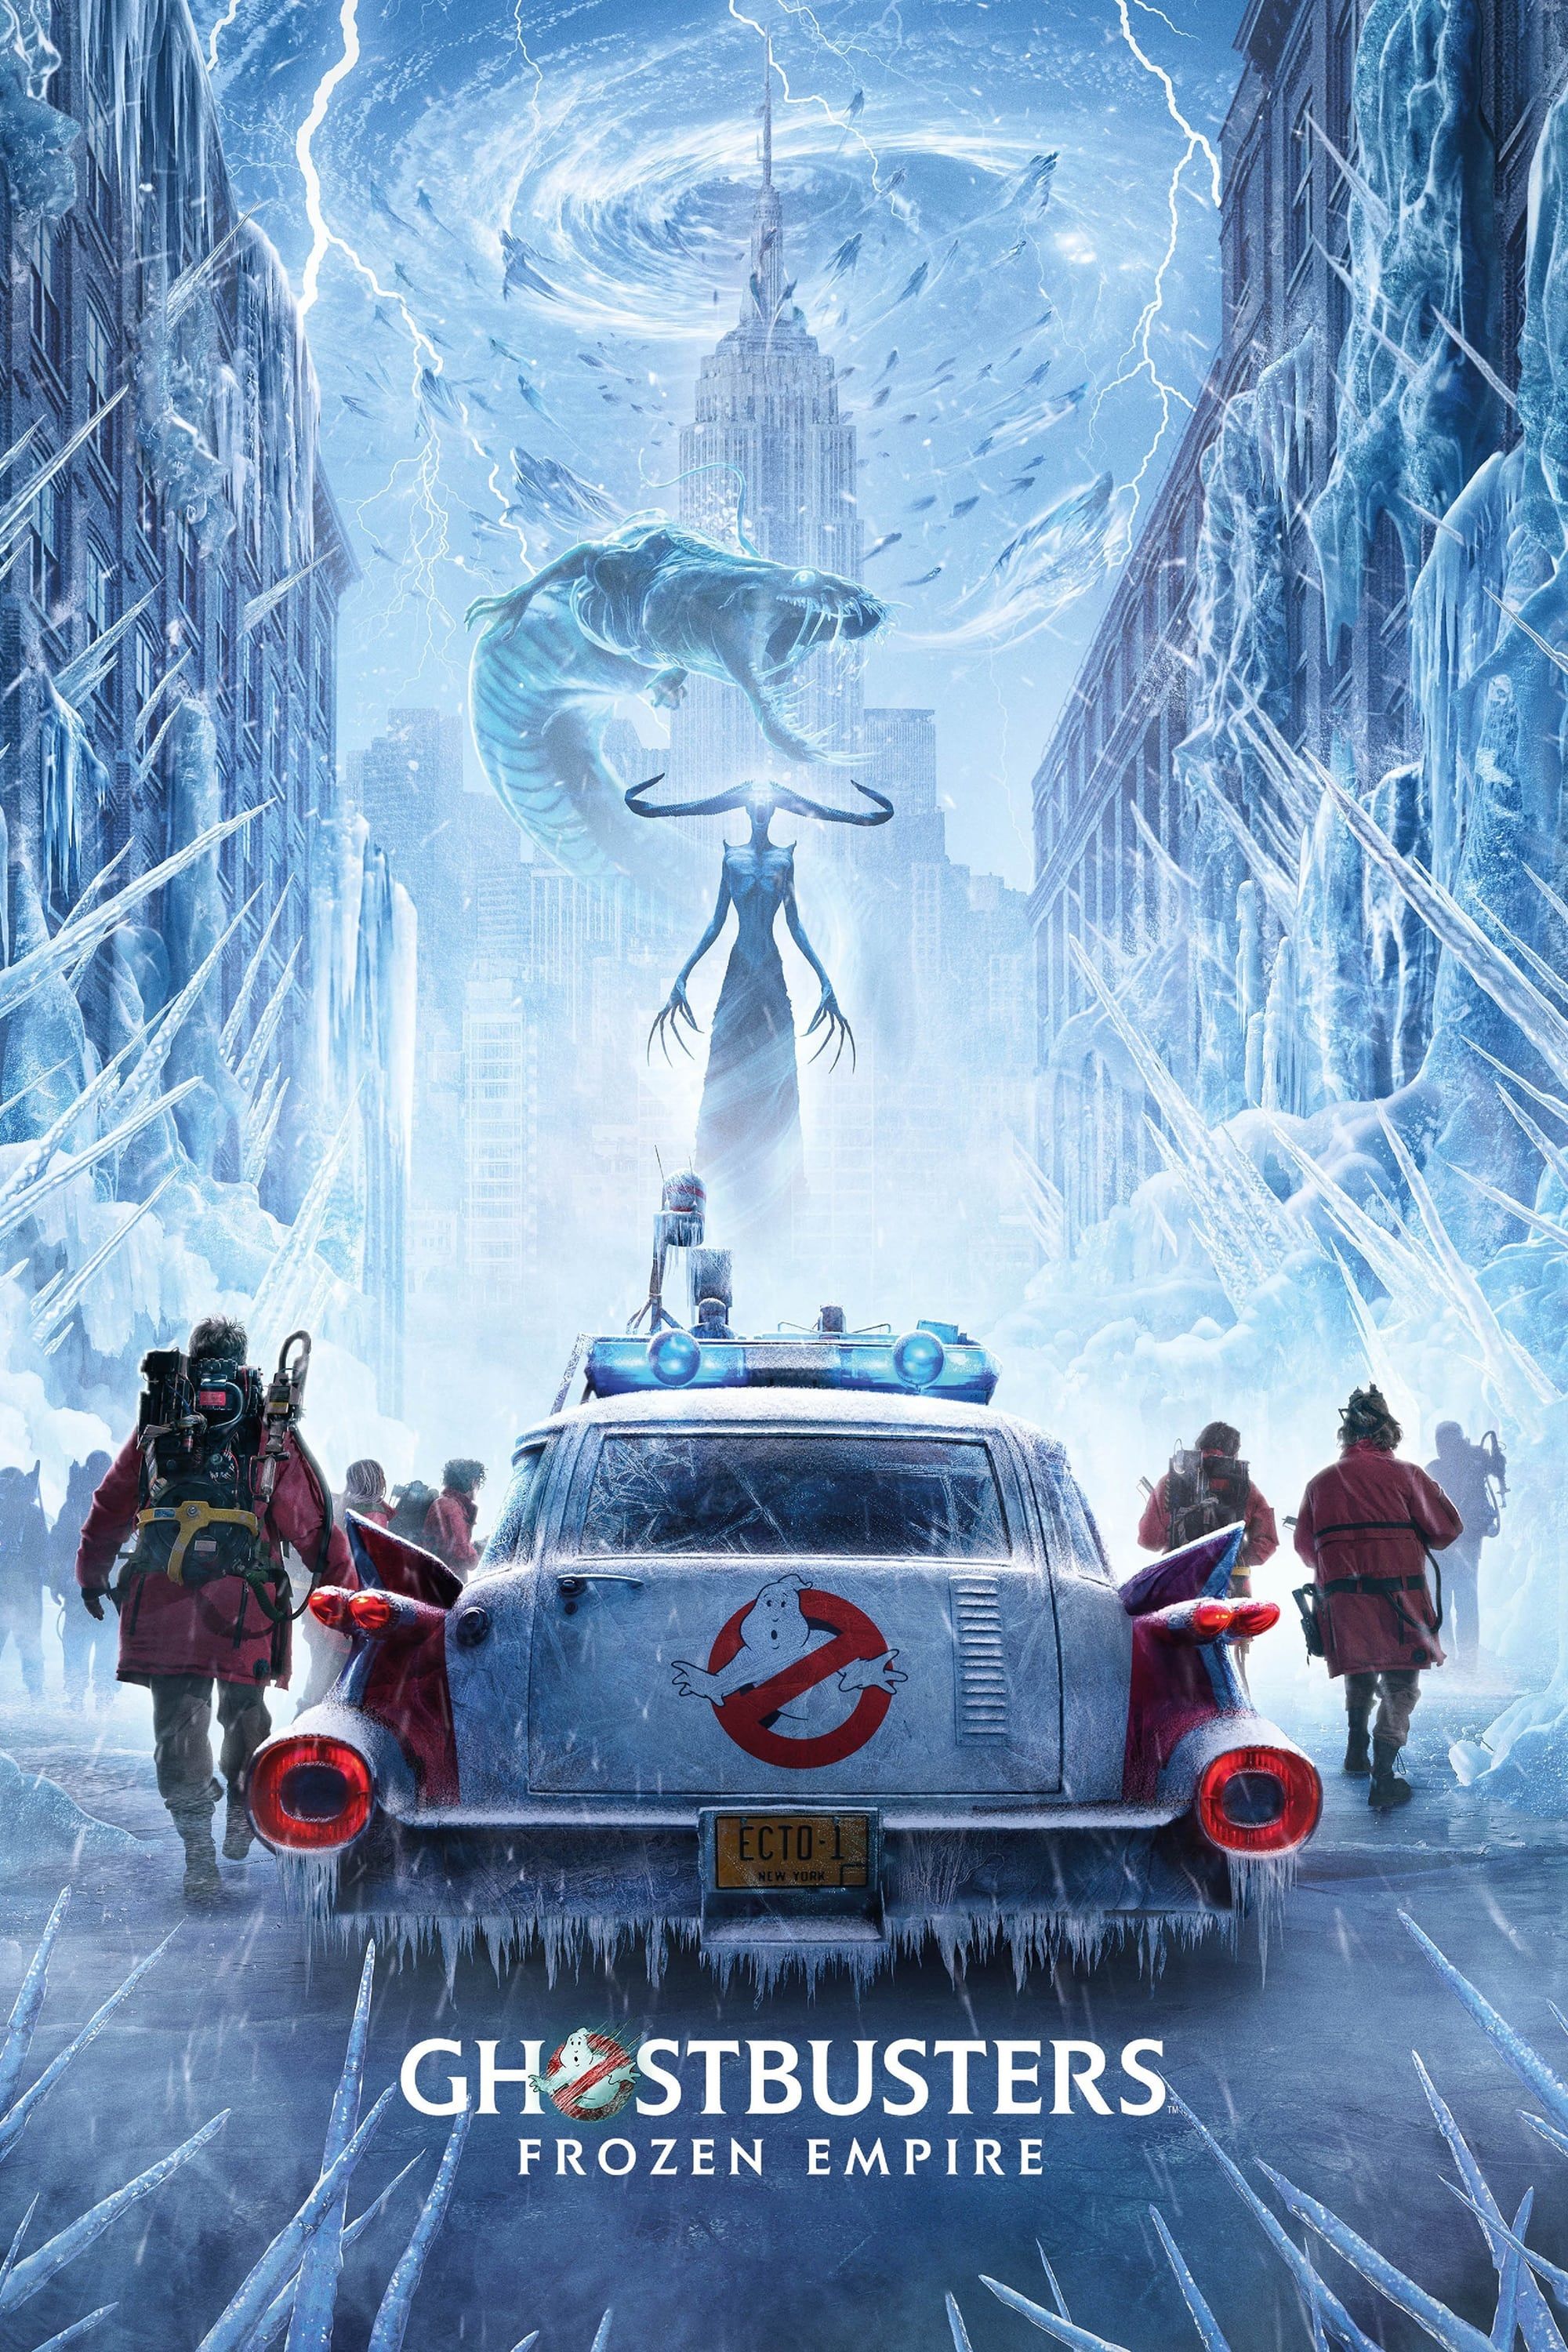 Plakat Ghostbusters Frozen Empire przedstawiający ekipę wychodzącą z Ecto 1 i stawiającą czoła lodowym stworzeniom w Nowym Jorku